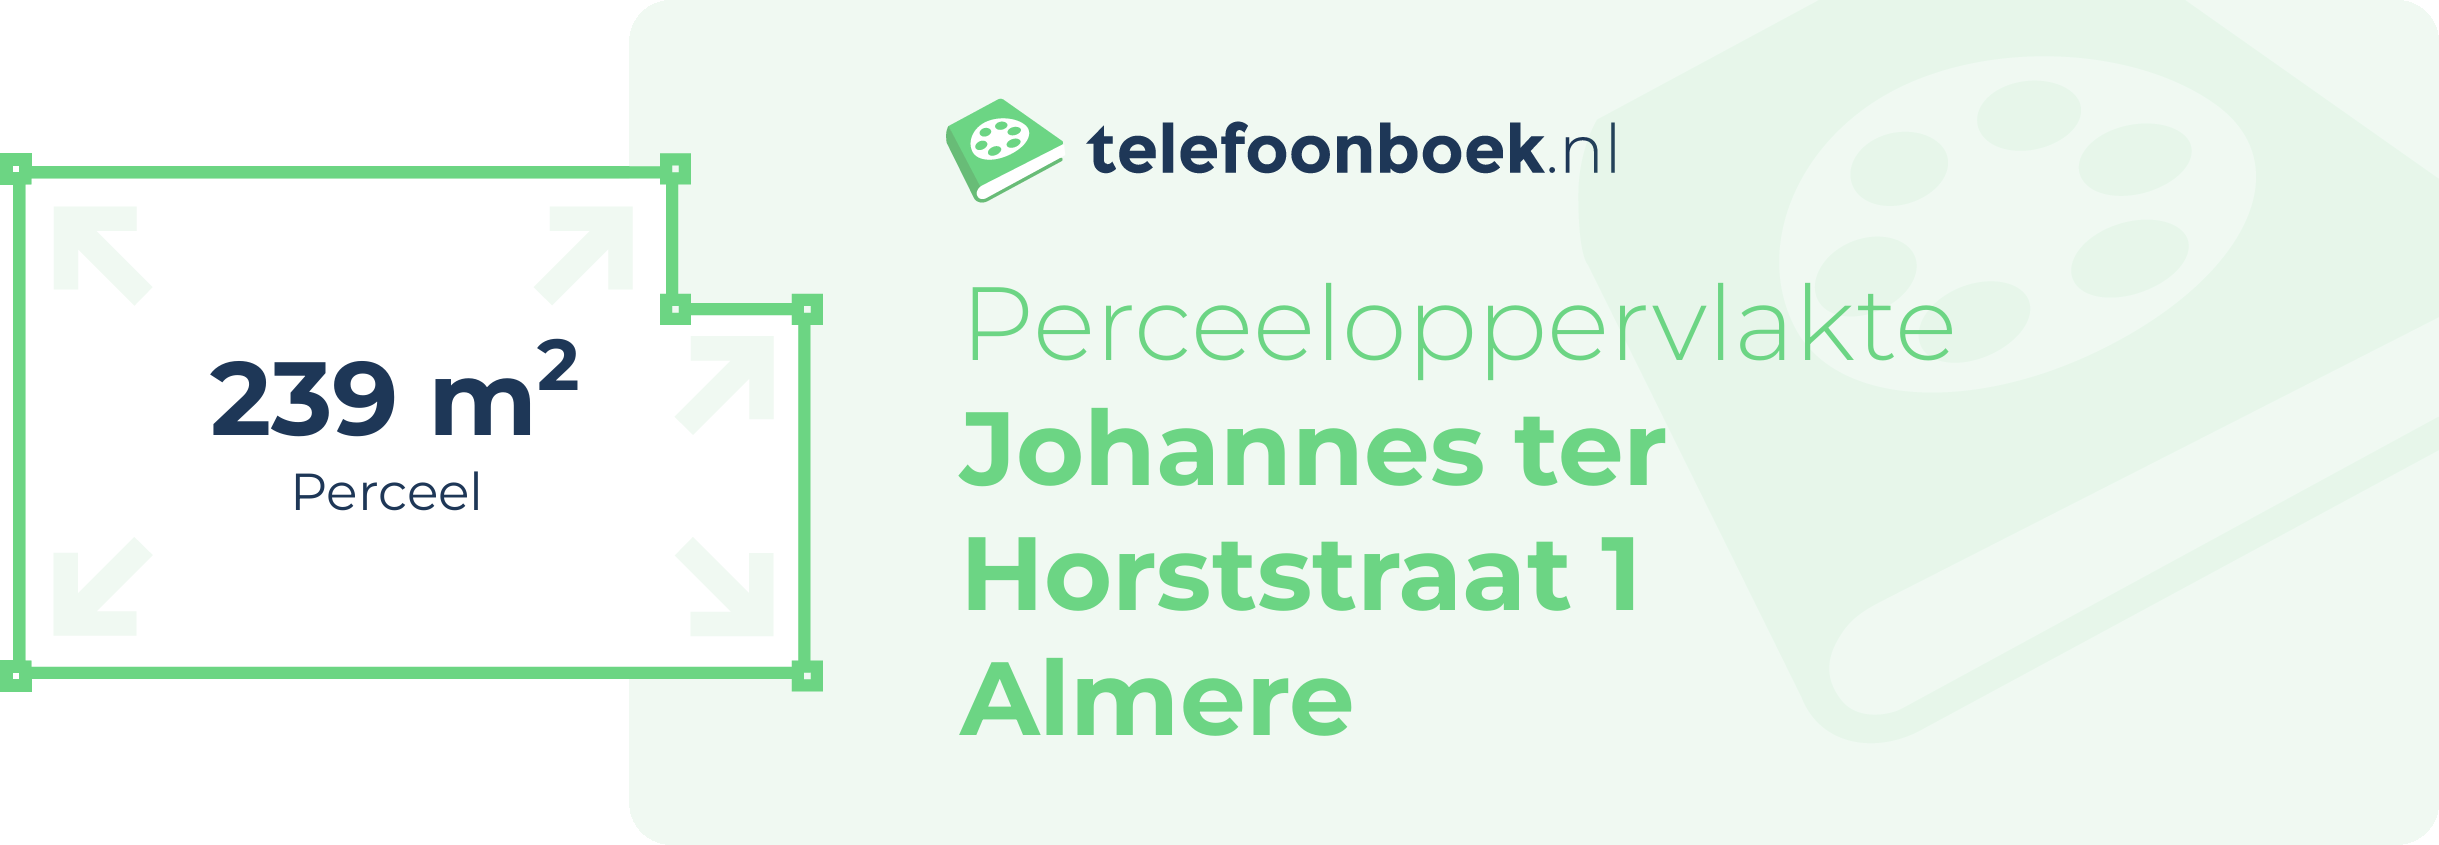 Perceeloppervlakte Johannes Ter Horststraat 1 Almere